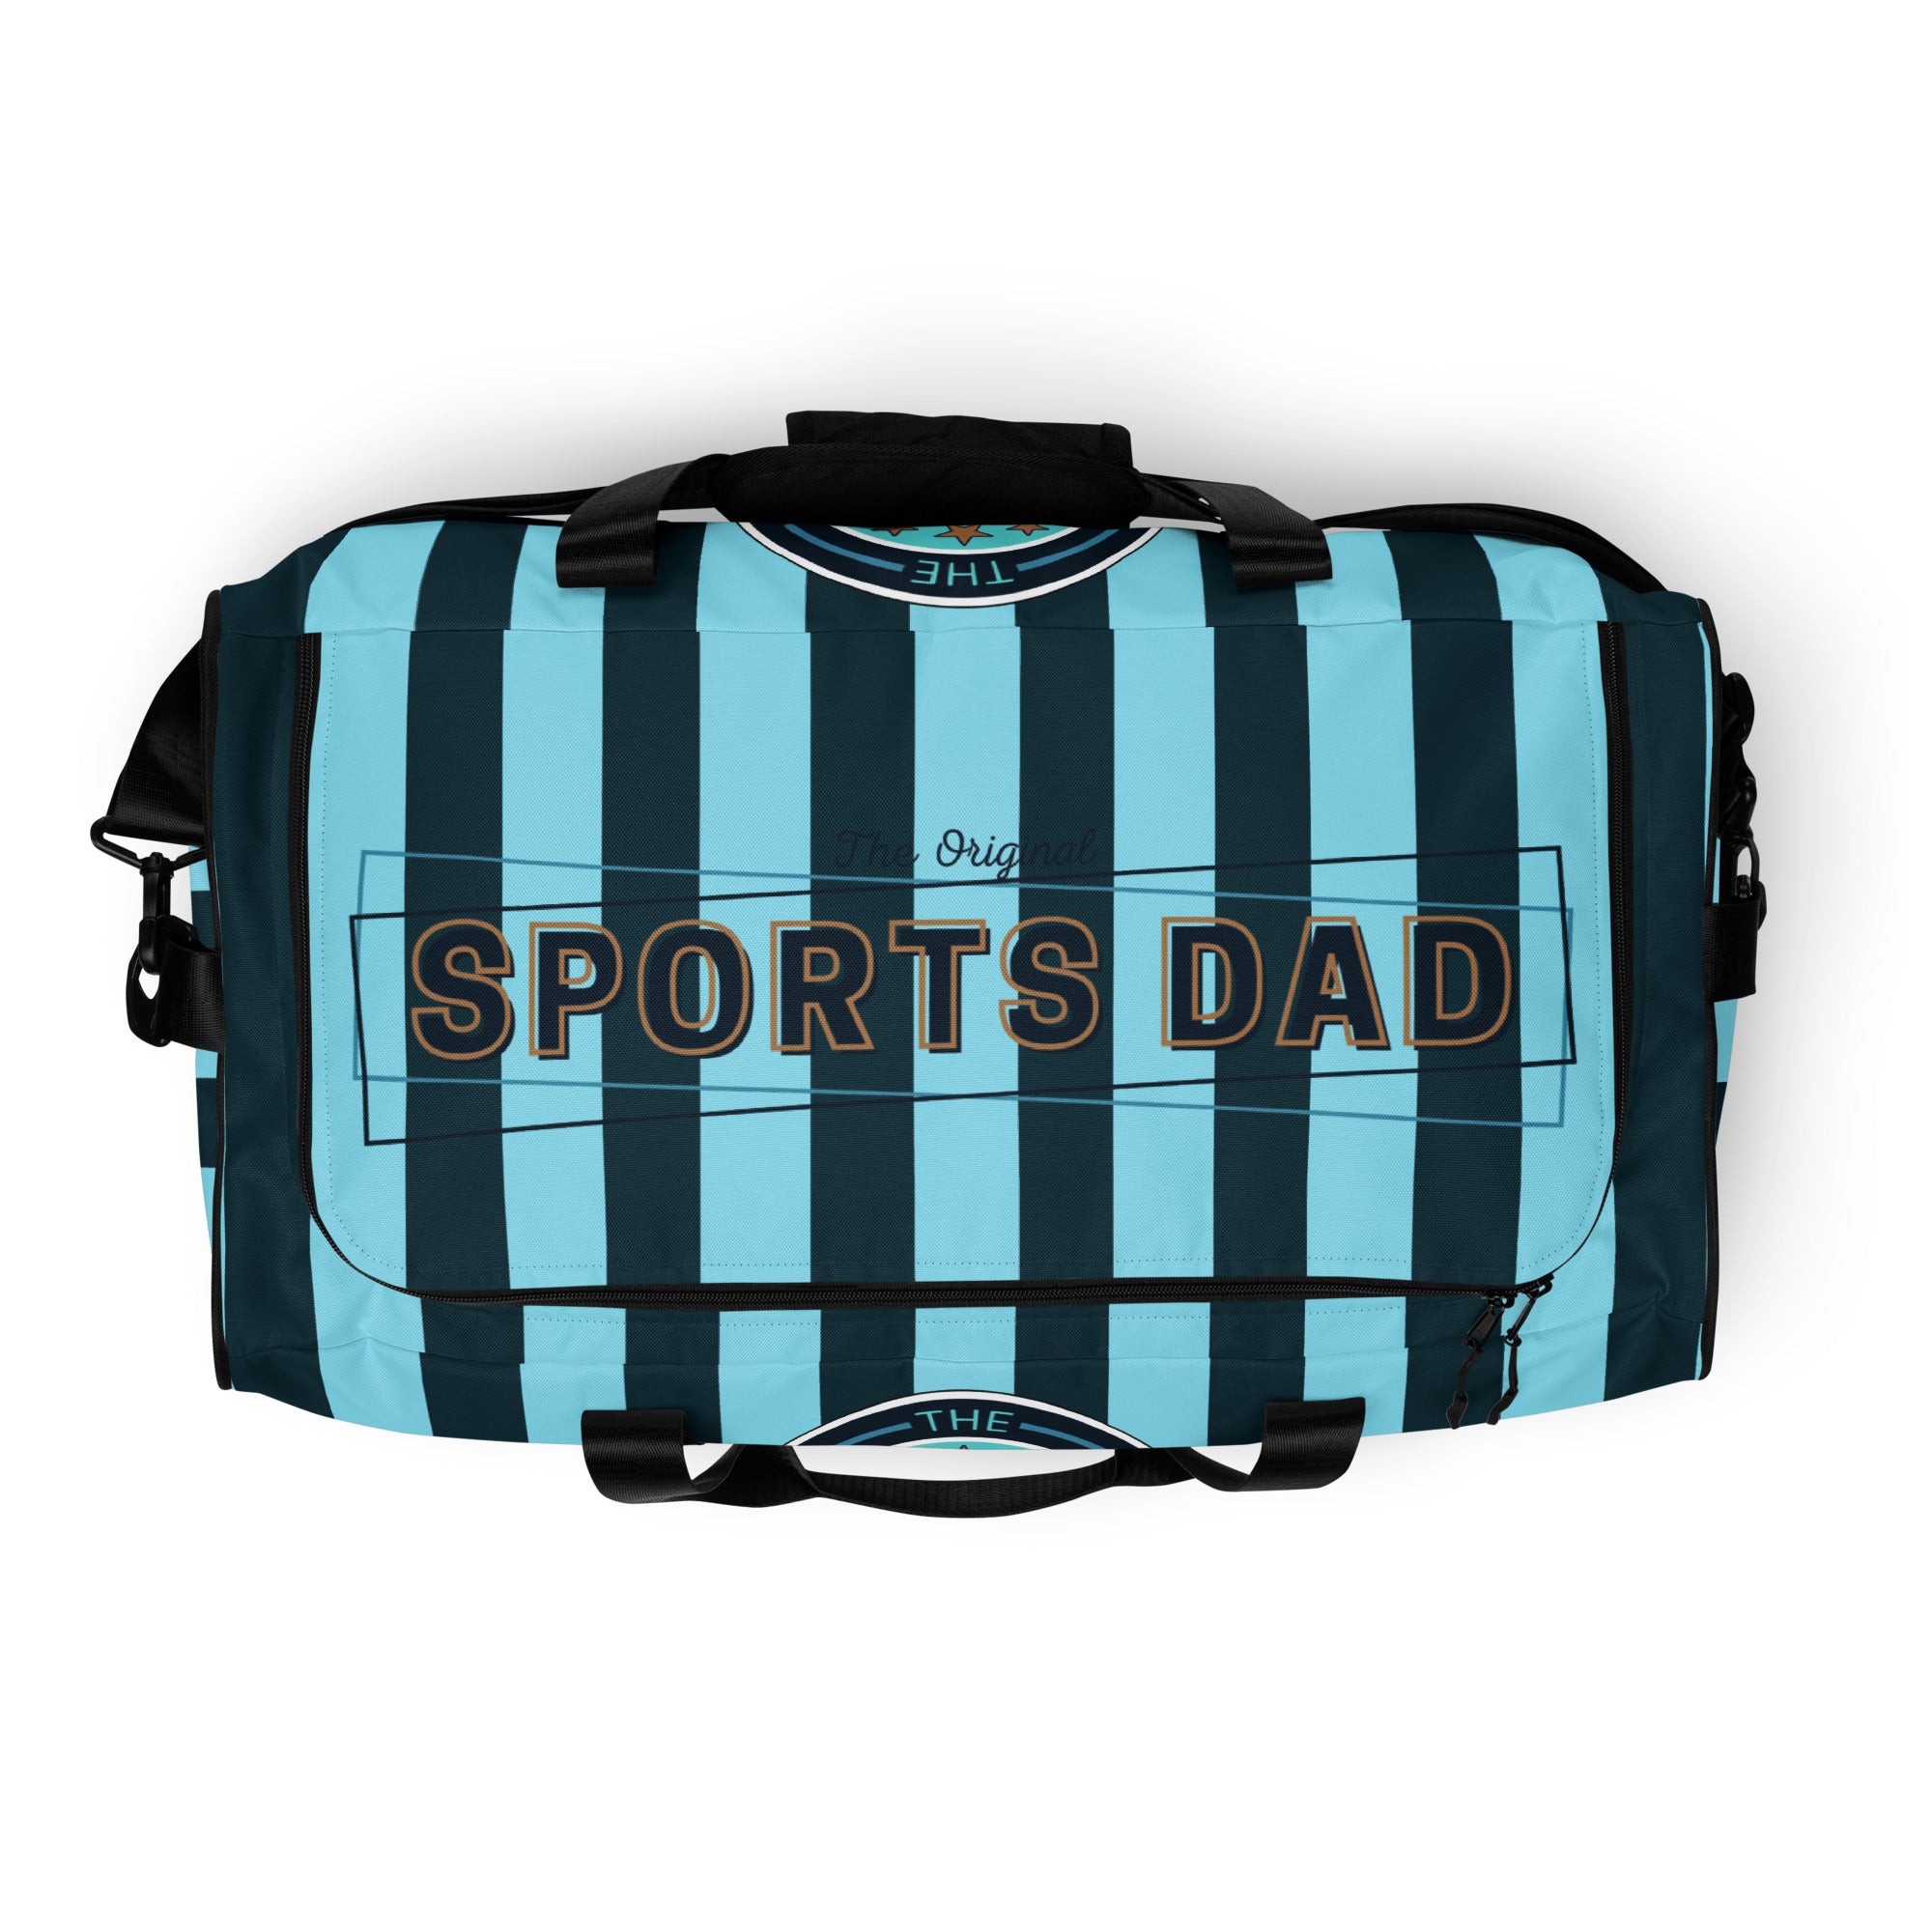 Sports Dad Ultimate Duffle Bag - Wallpaper